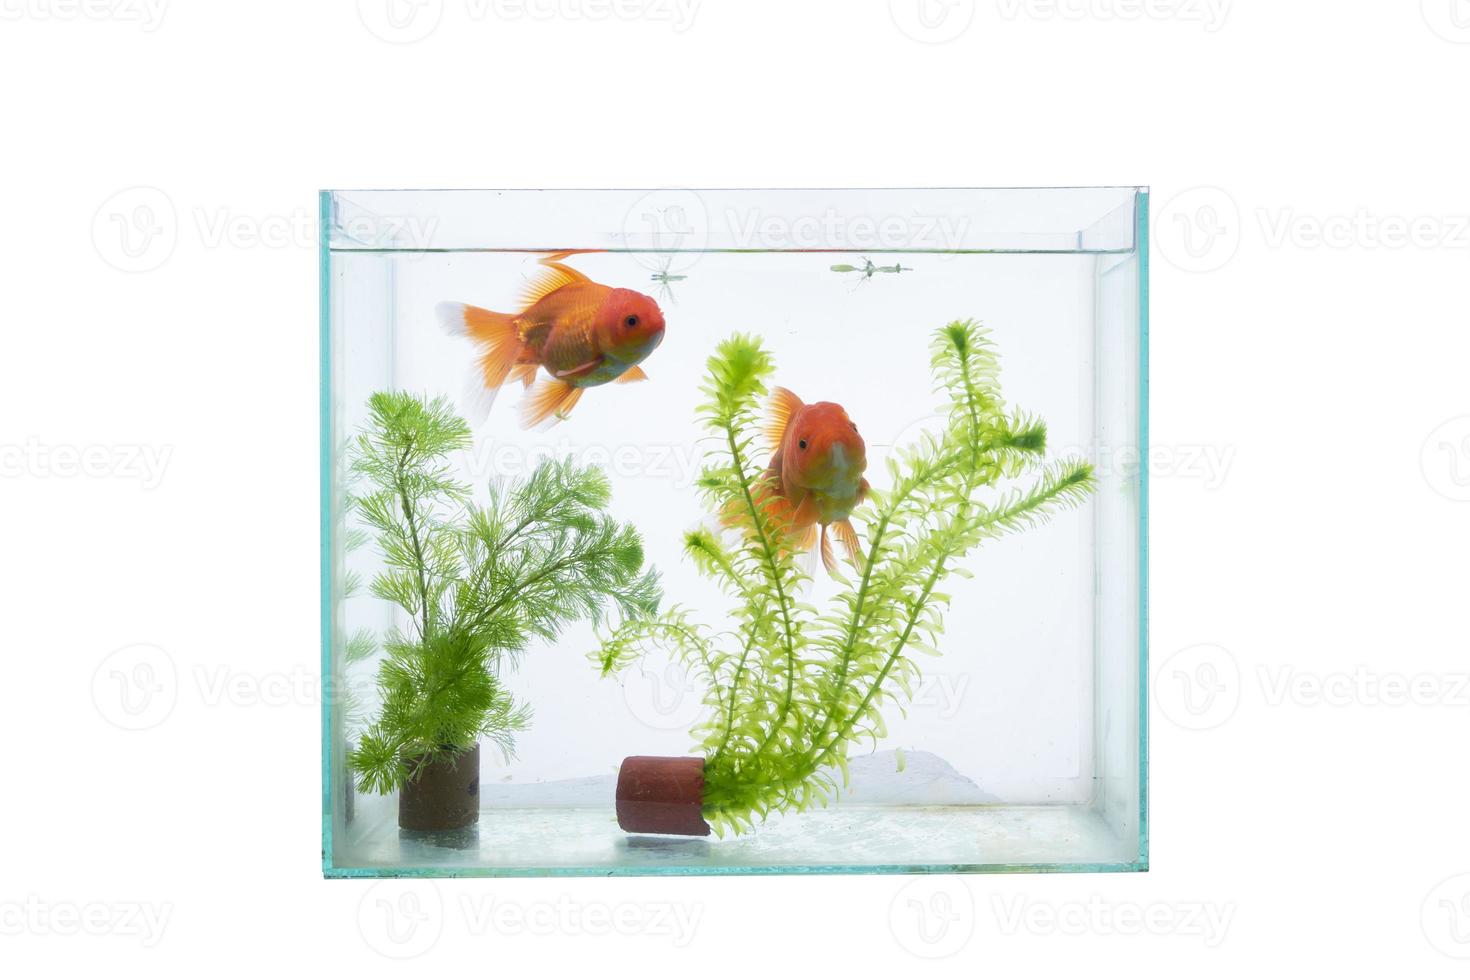 aquário com peixes e plantas aquáticas isoladas em um fundo branco. foto